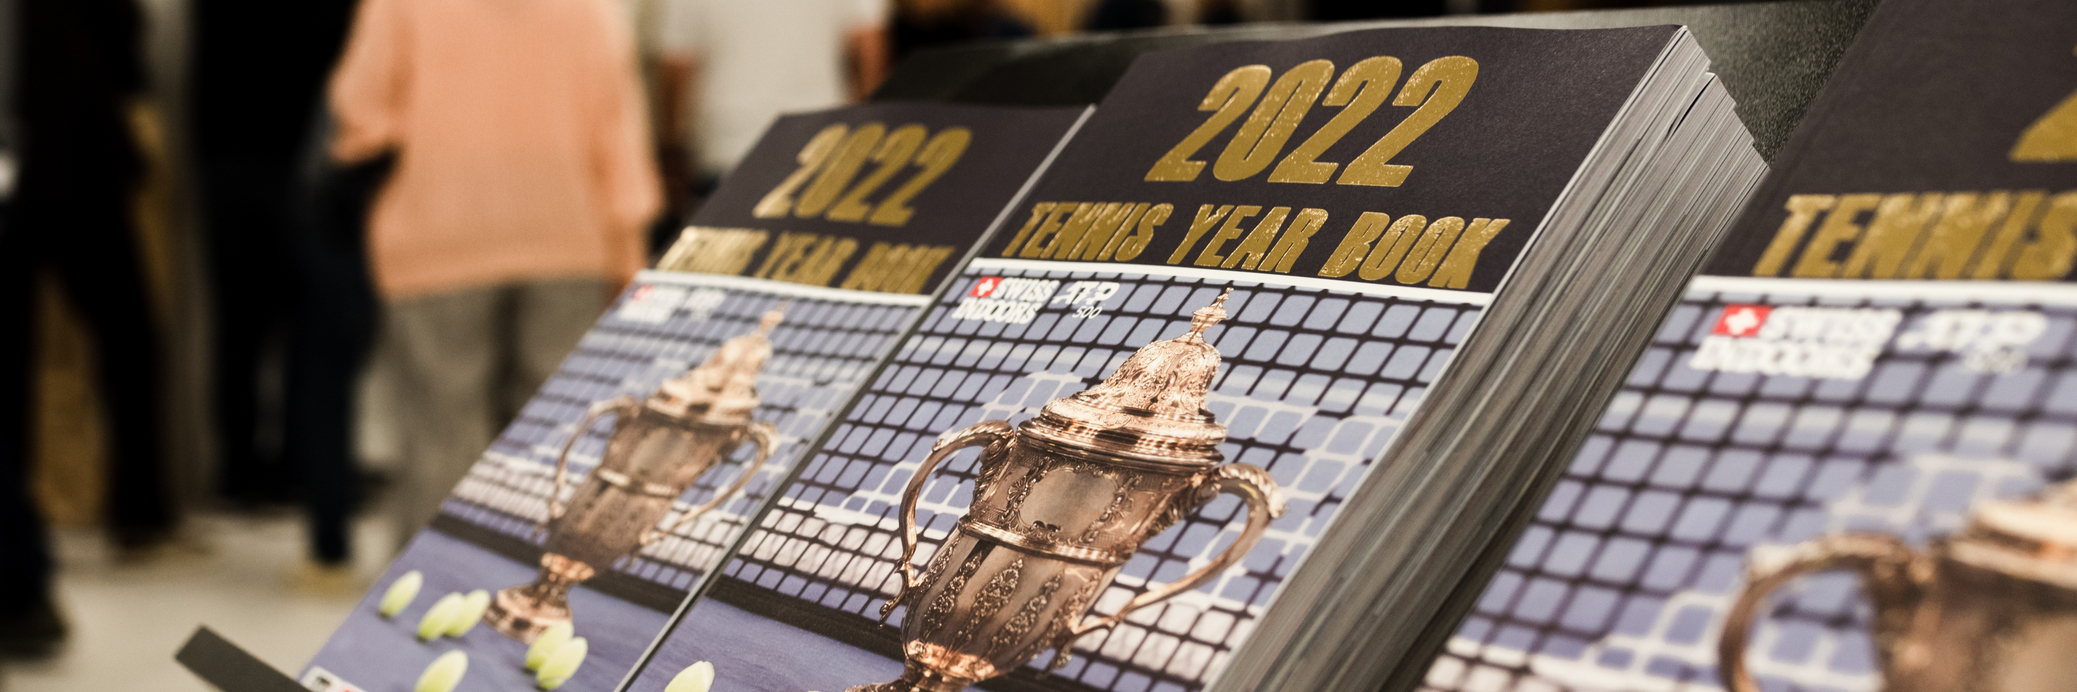 Anzeige im Tennis Year Book